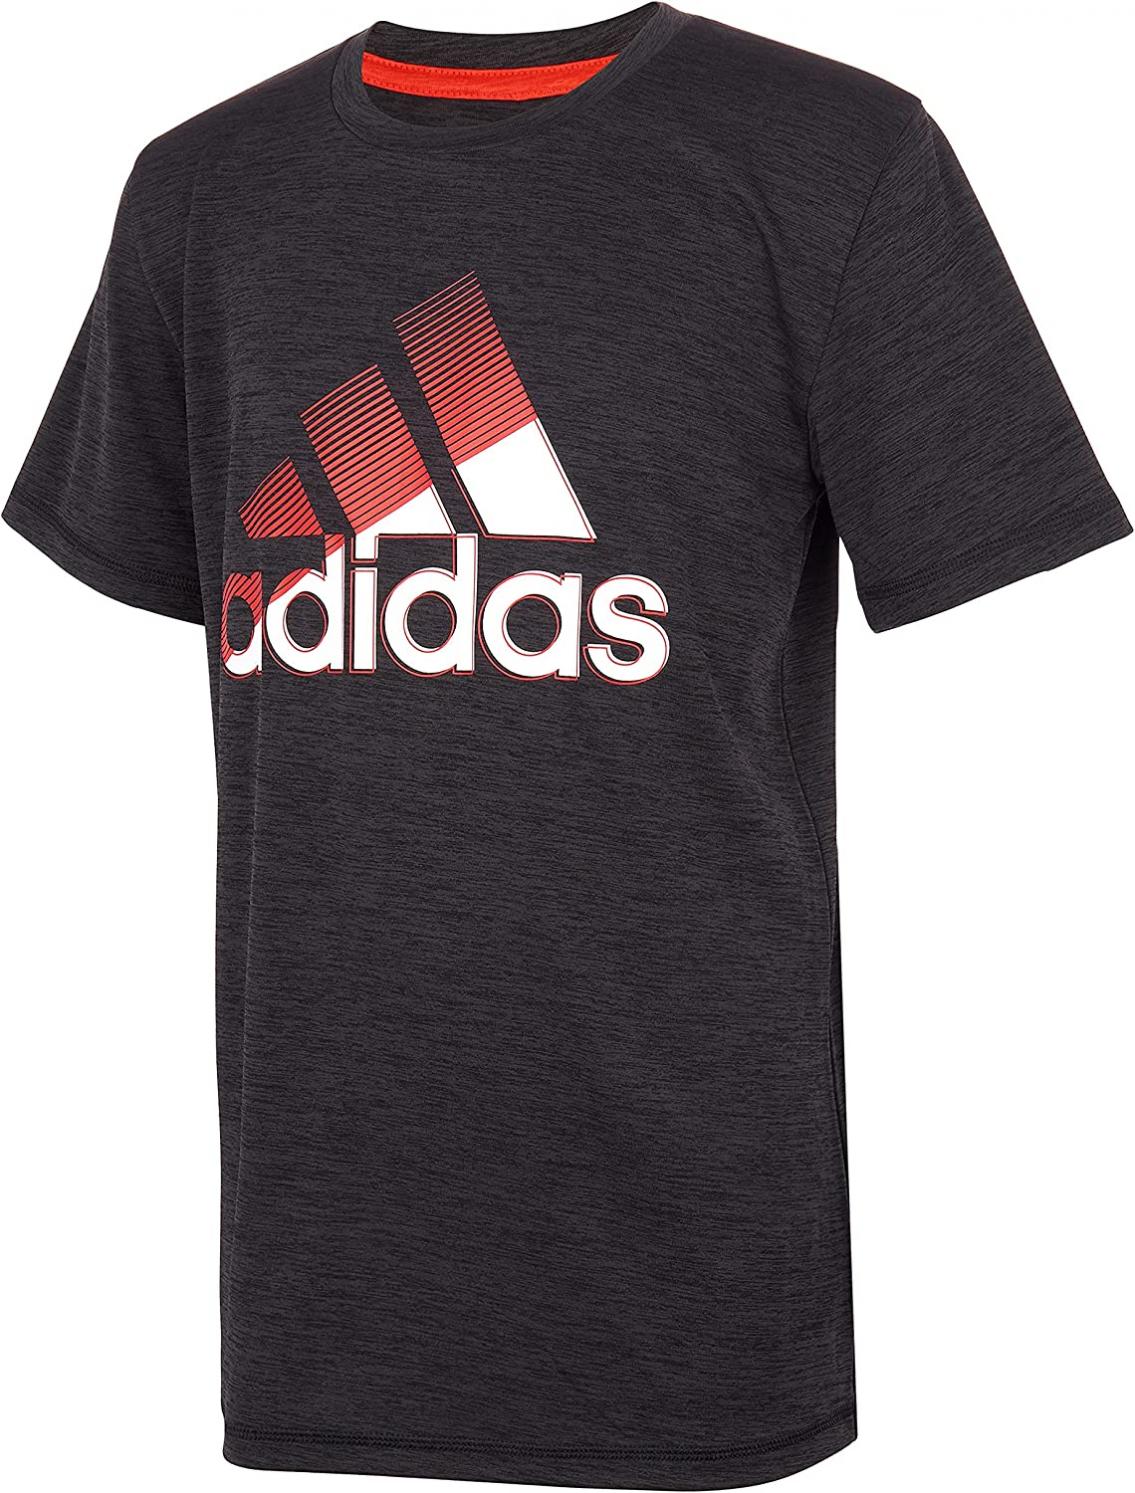 adidas Boys' Short Sleeve Moisture-Wicking Boss Logo T-Shirt